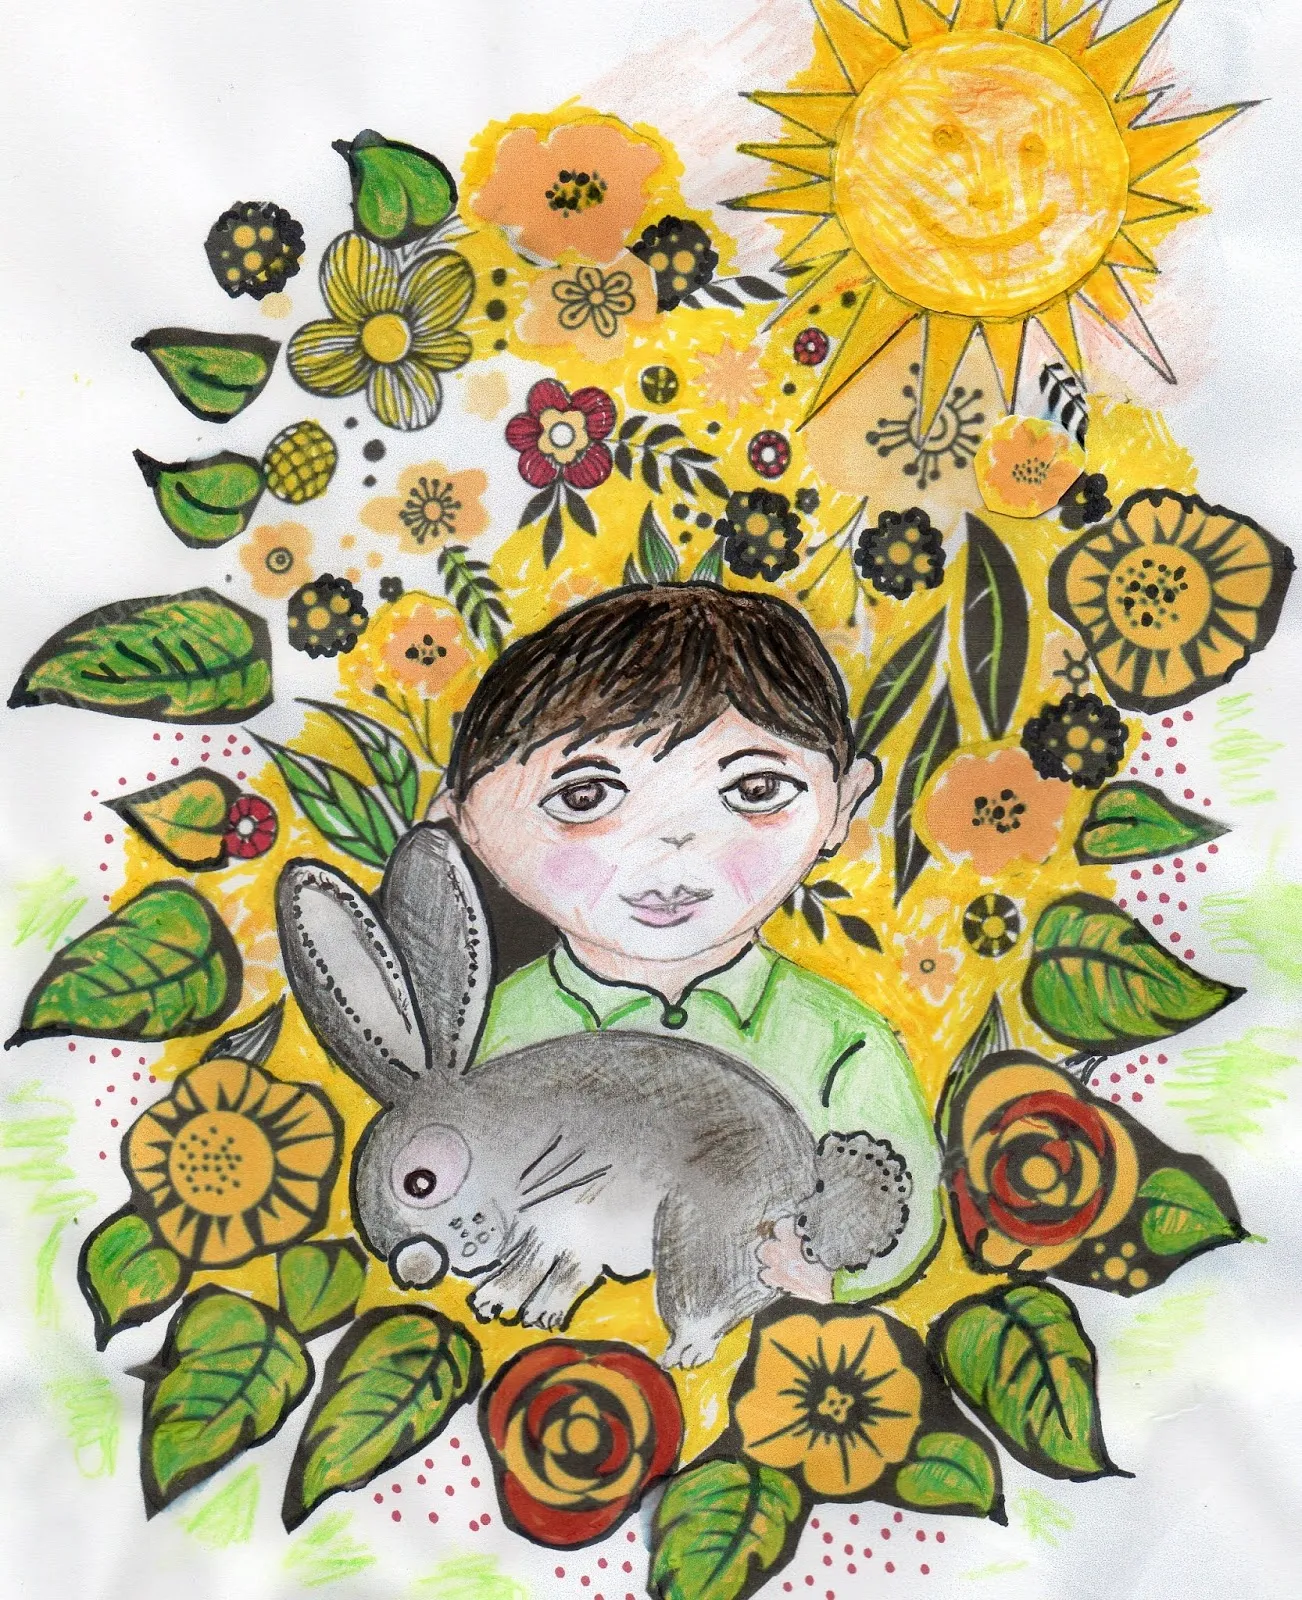 من قصص الأطفال - قصة: الأرنبُ زيتُون - تأليف ورسوم: مالك الشويّخ - موقع (كيدزوون | Kidzooon)